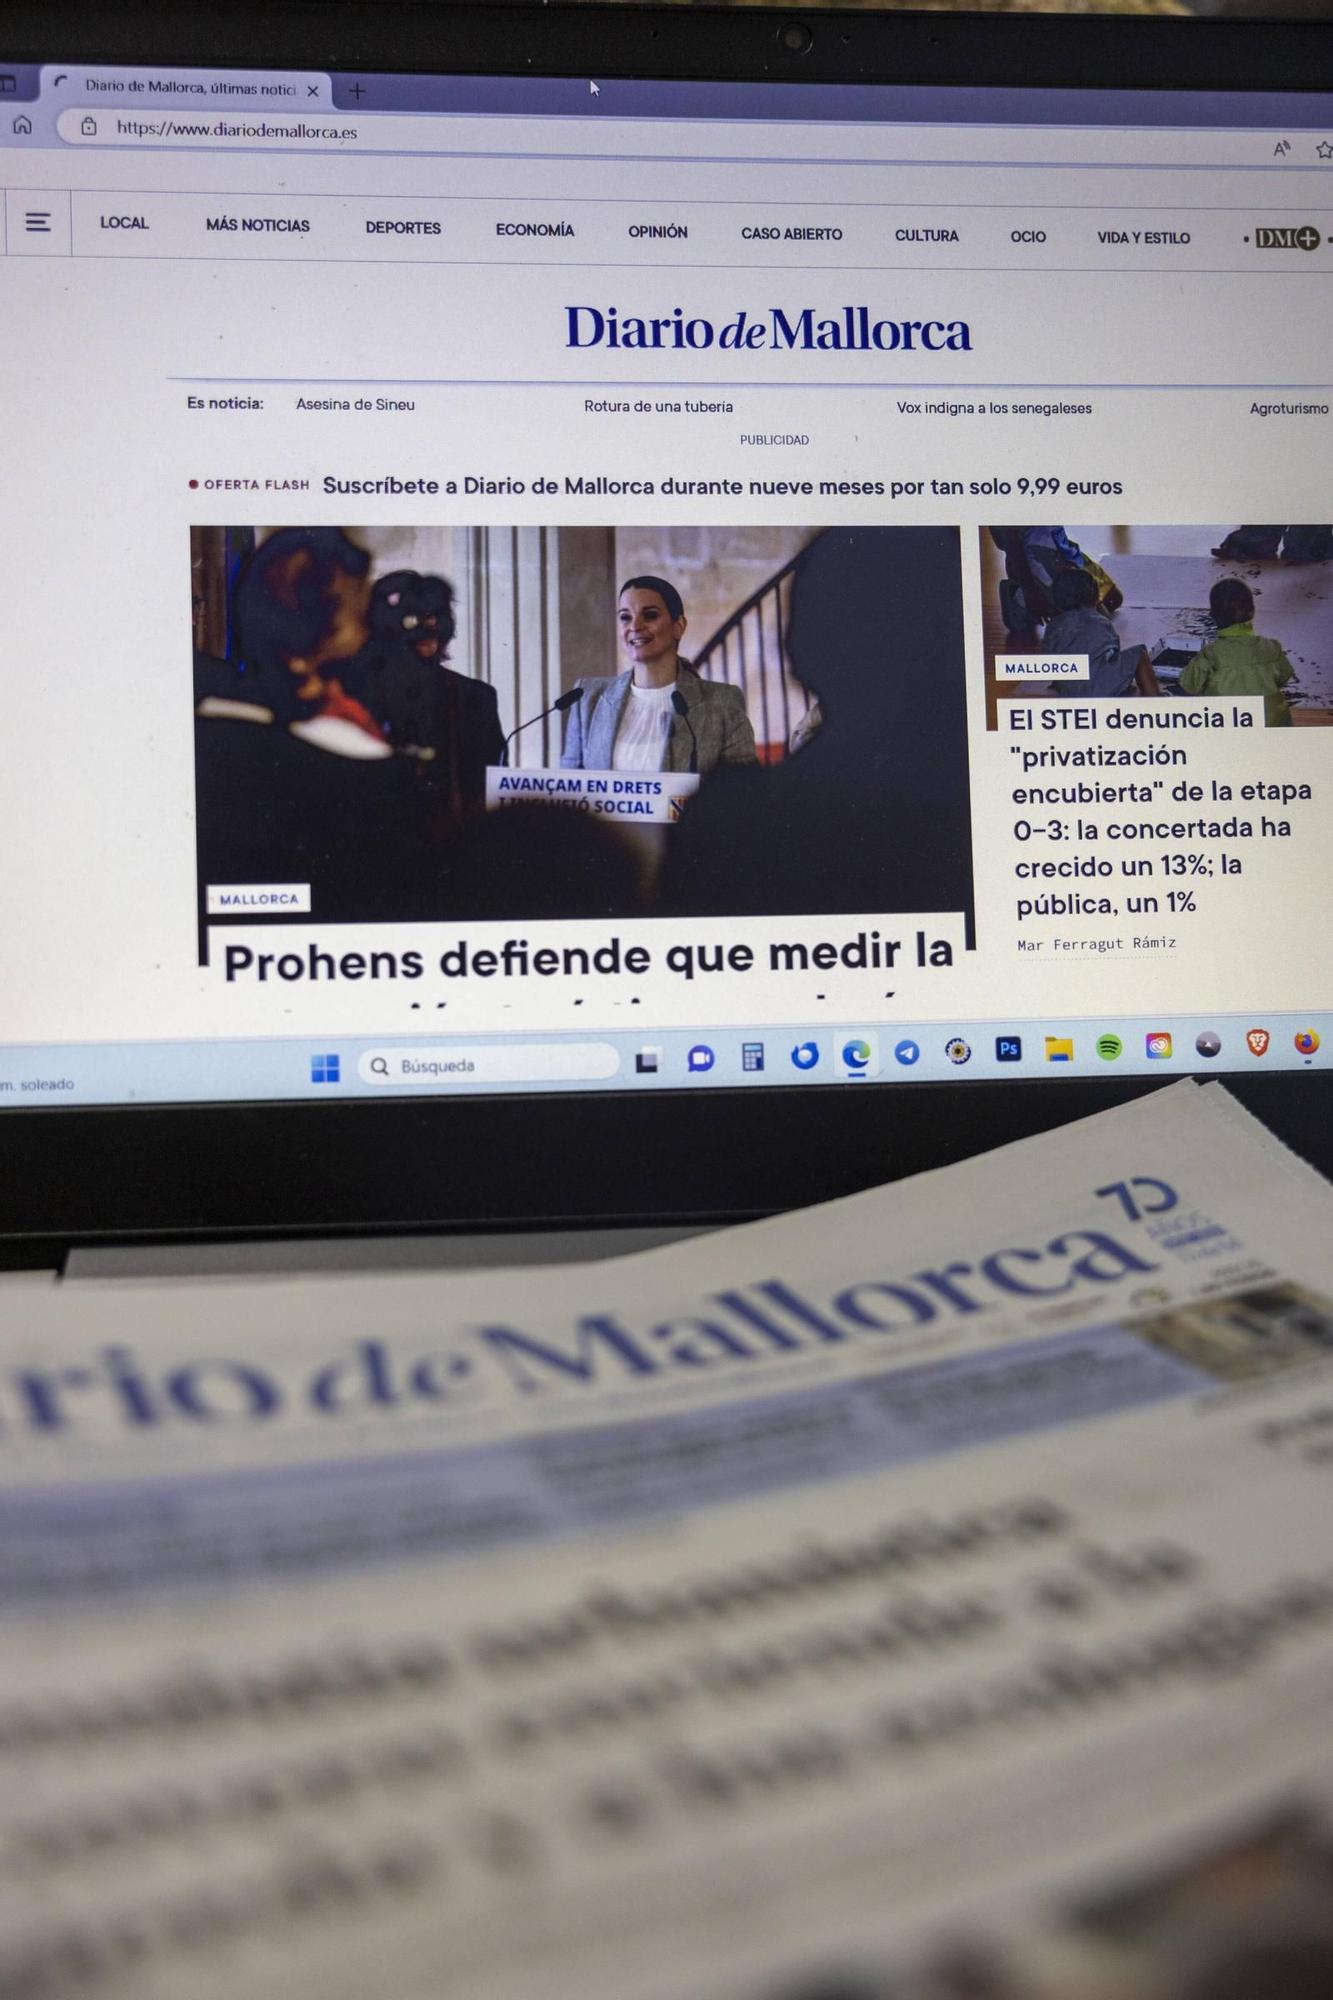 Diario de Mallorca, en sus ediciones de papel y digital, te ofrece toda la información y contenidos exclusivos